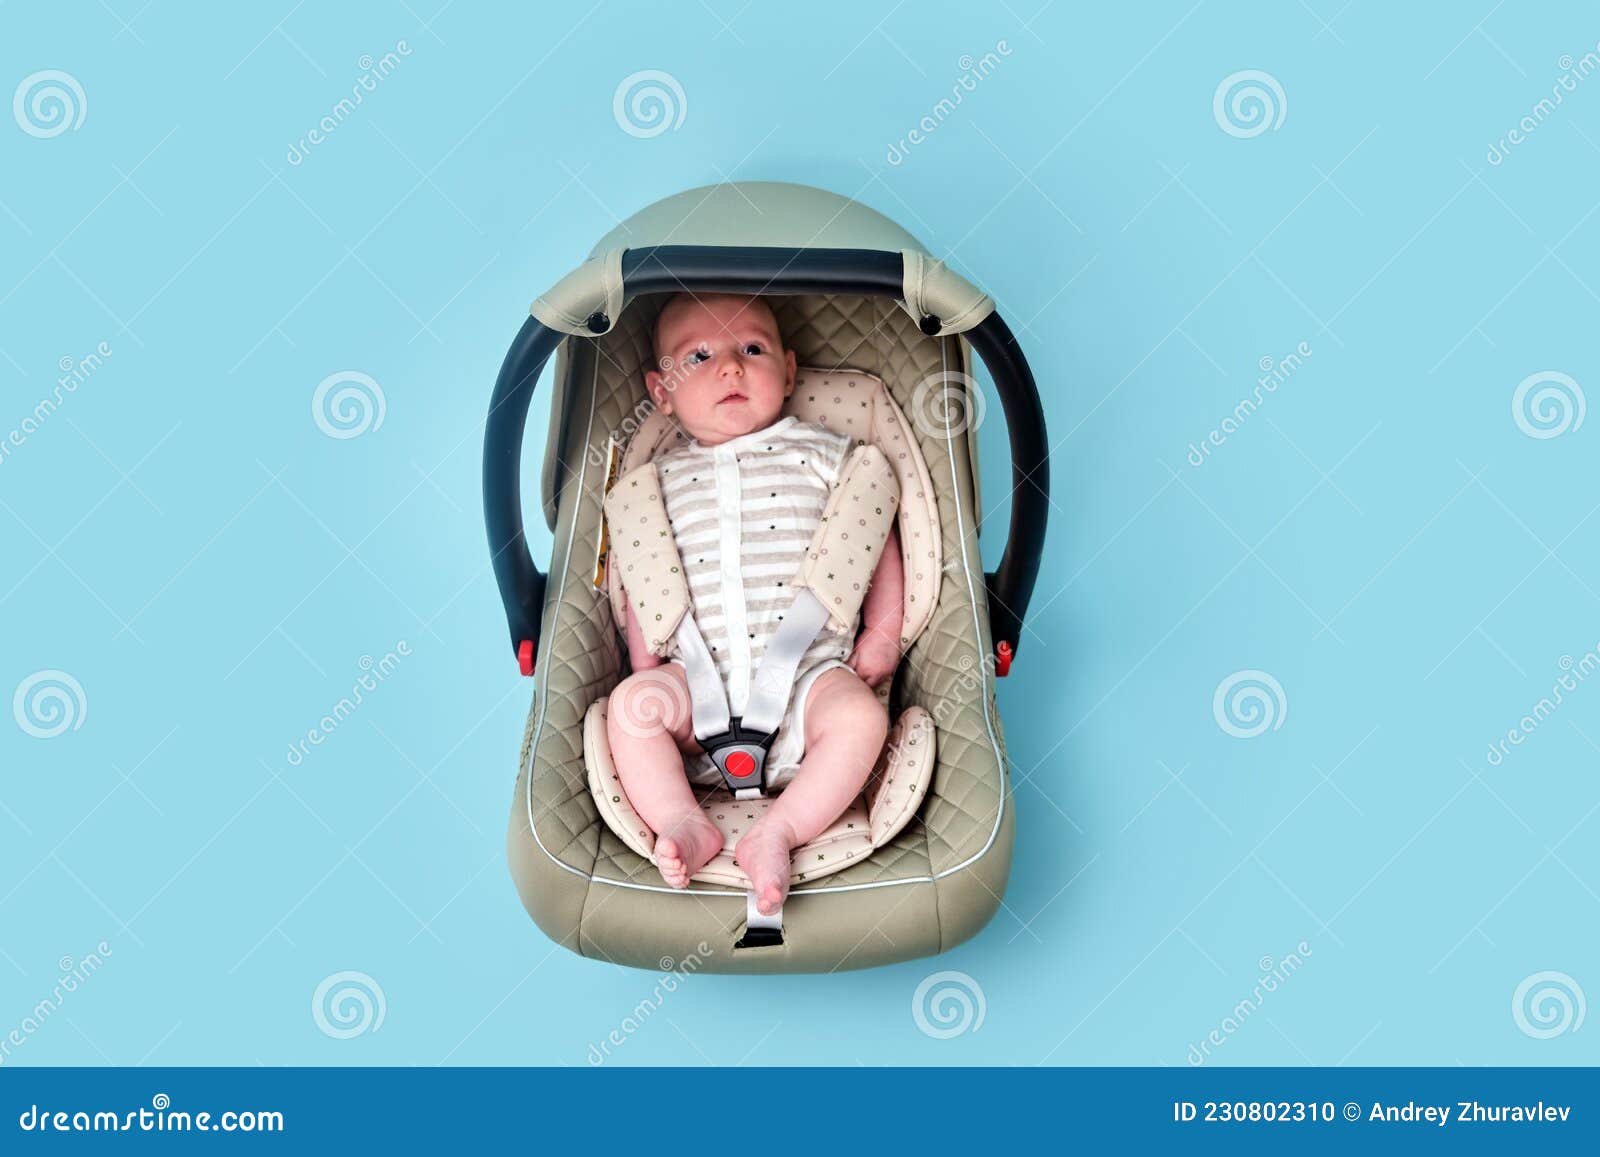 Bebé En Asiento De Bebé En Estudio Azul. Portador Para Transportar a Nacidos En Una Silla Foto de archivo - Imagen de verde, 230802310